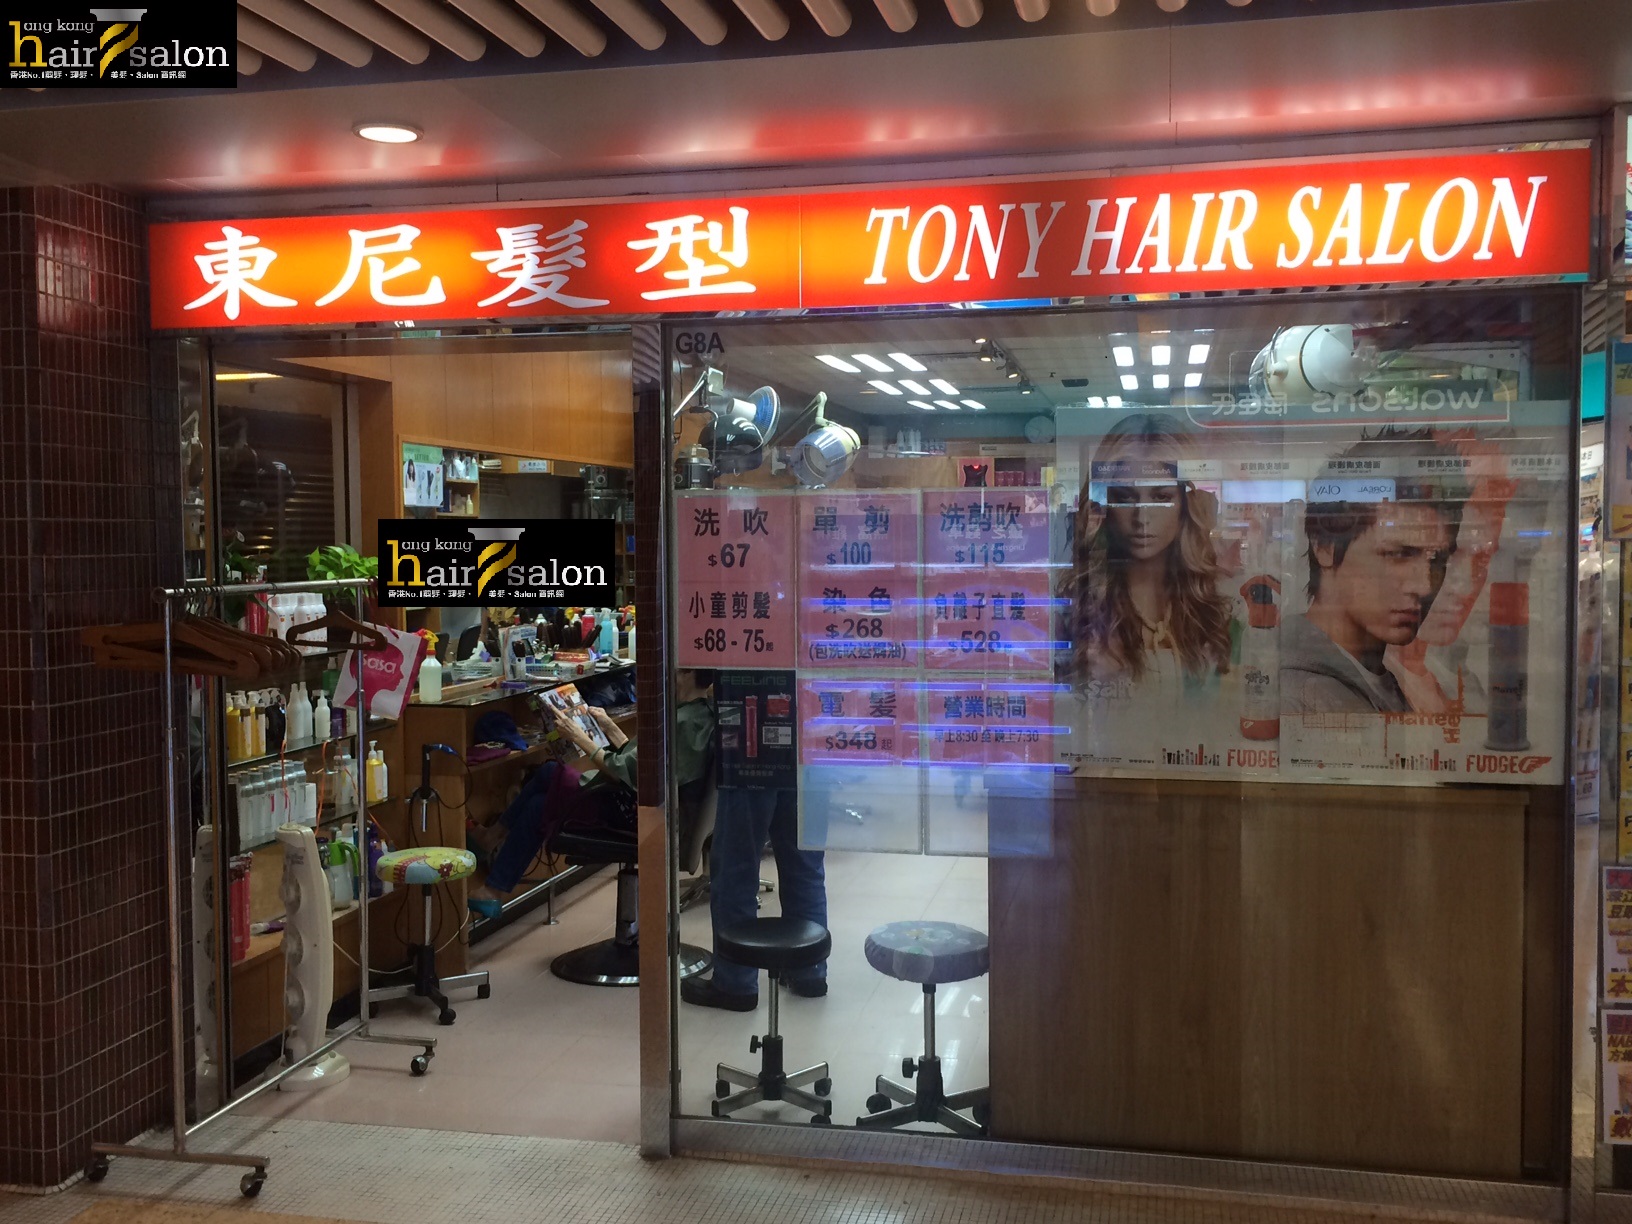 Electric hair: 東尼髮型 Tony Hair Salon